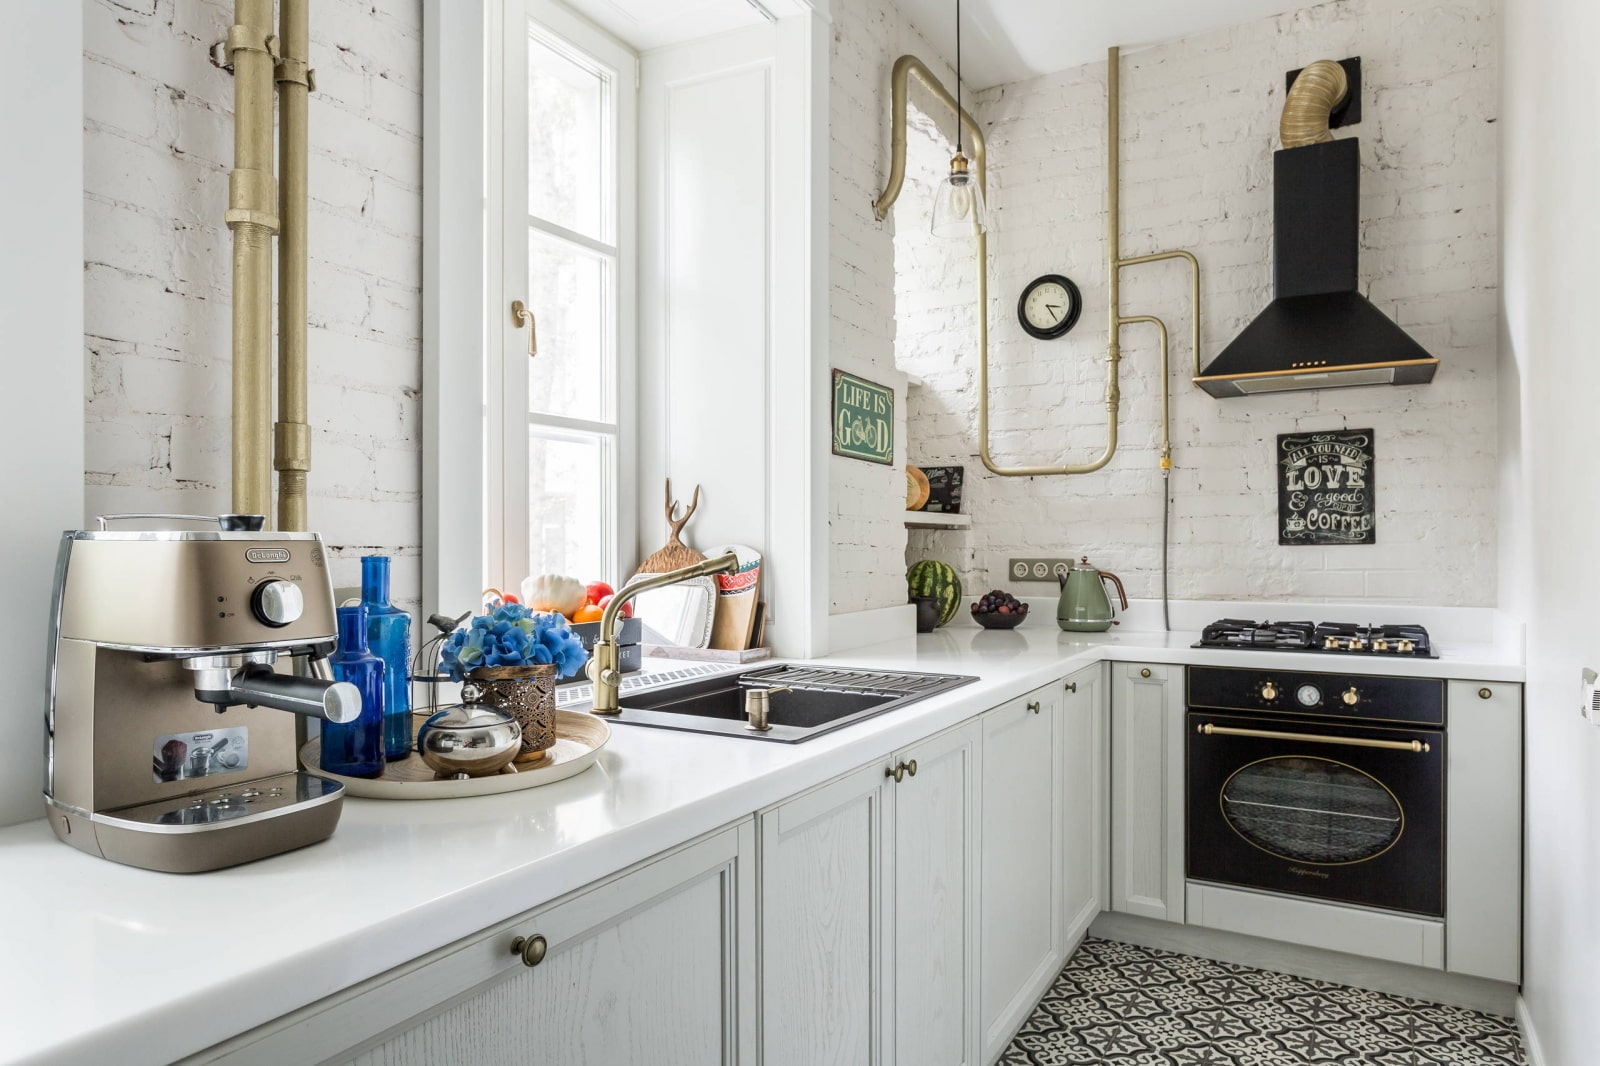 Как спрятать газовый котел на кухне на стене: идеи дизайна